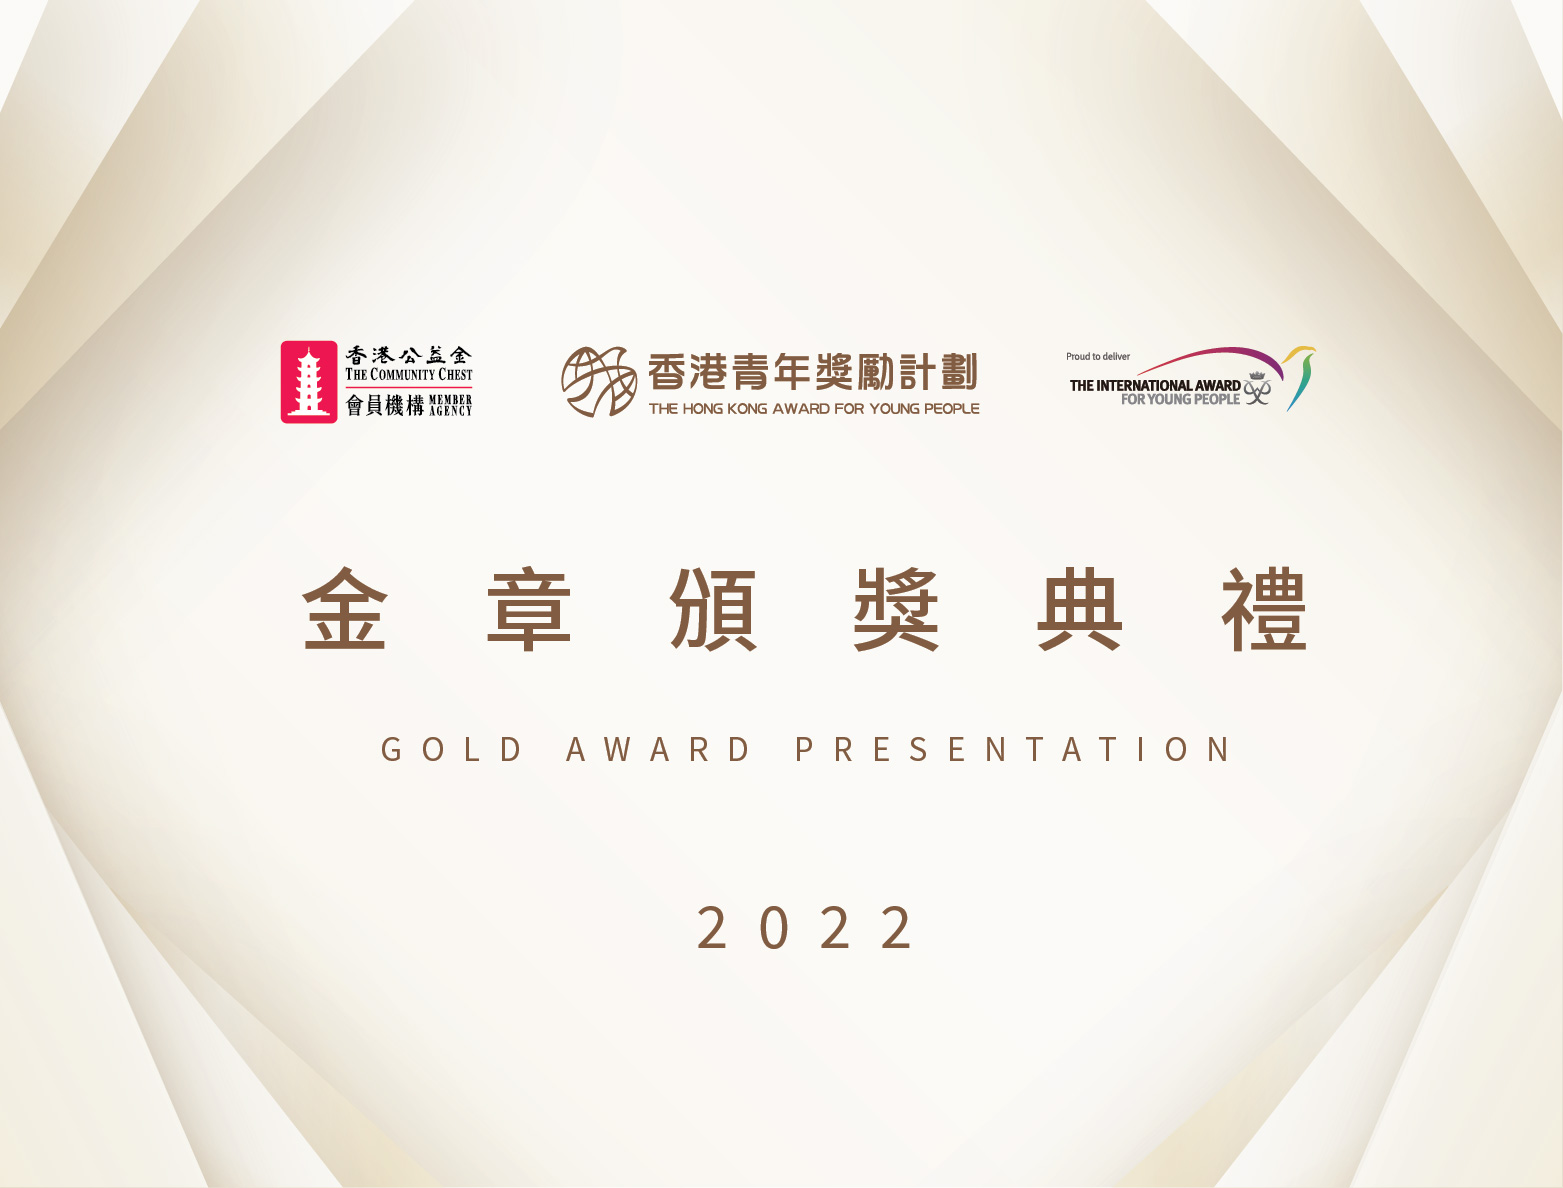 2022年12月號：金章頒獎典禮2022圓滿舉行